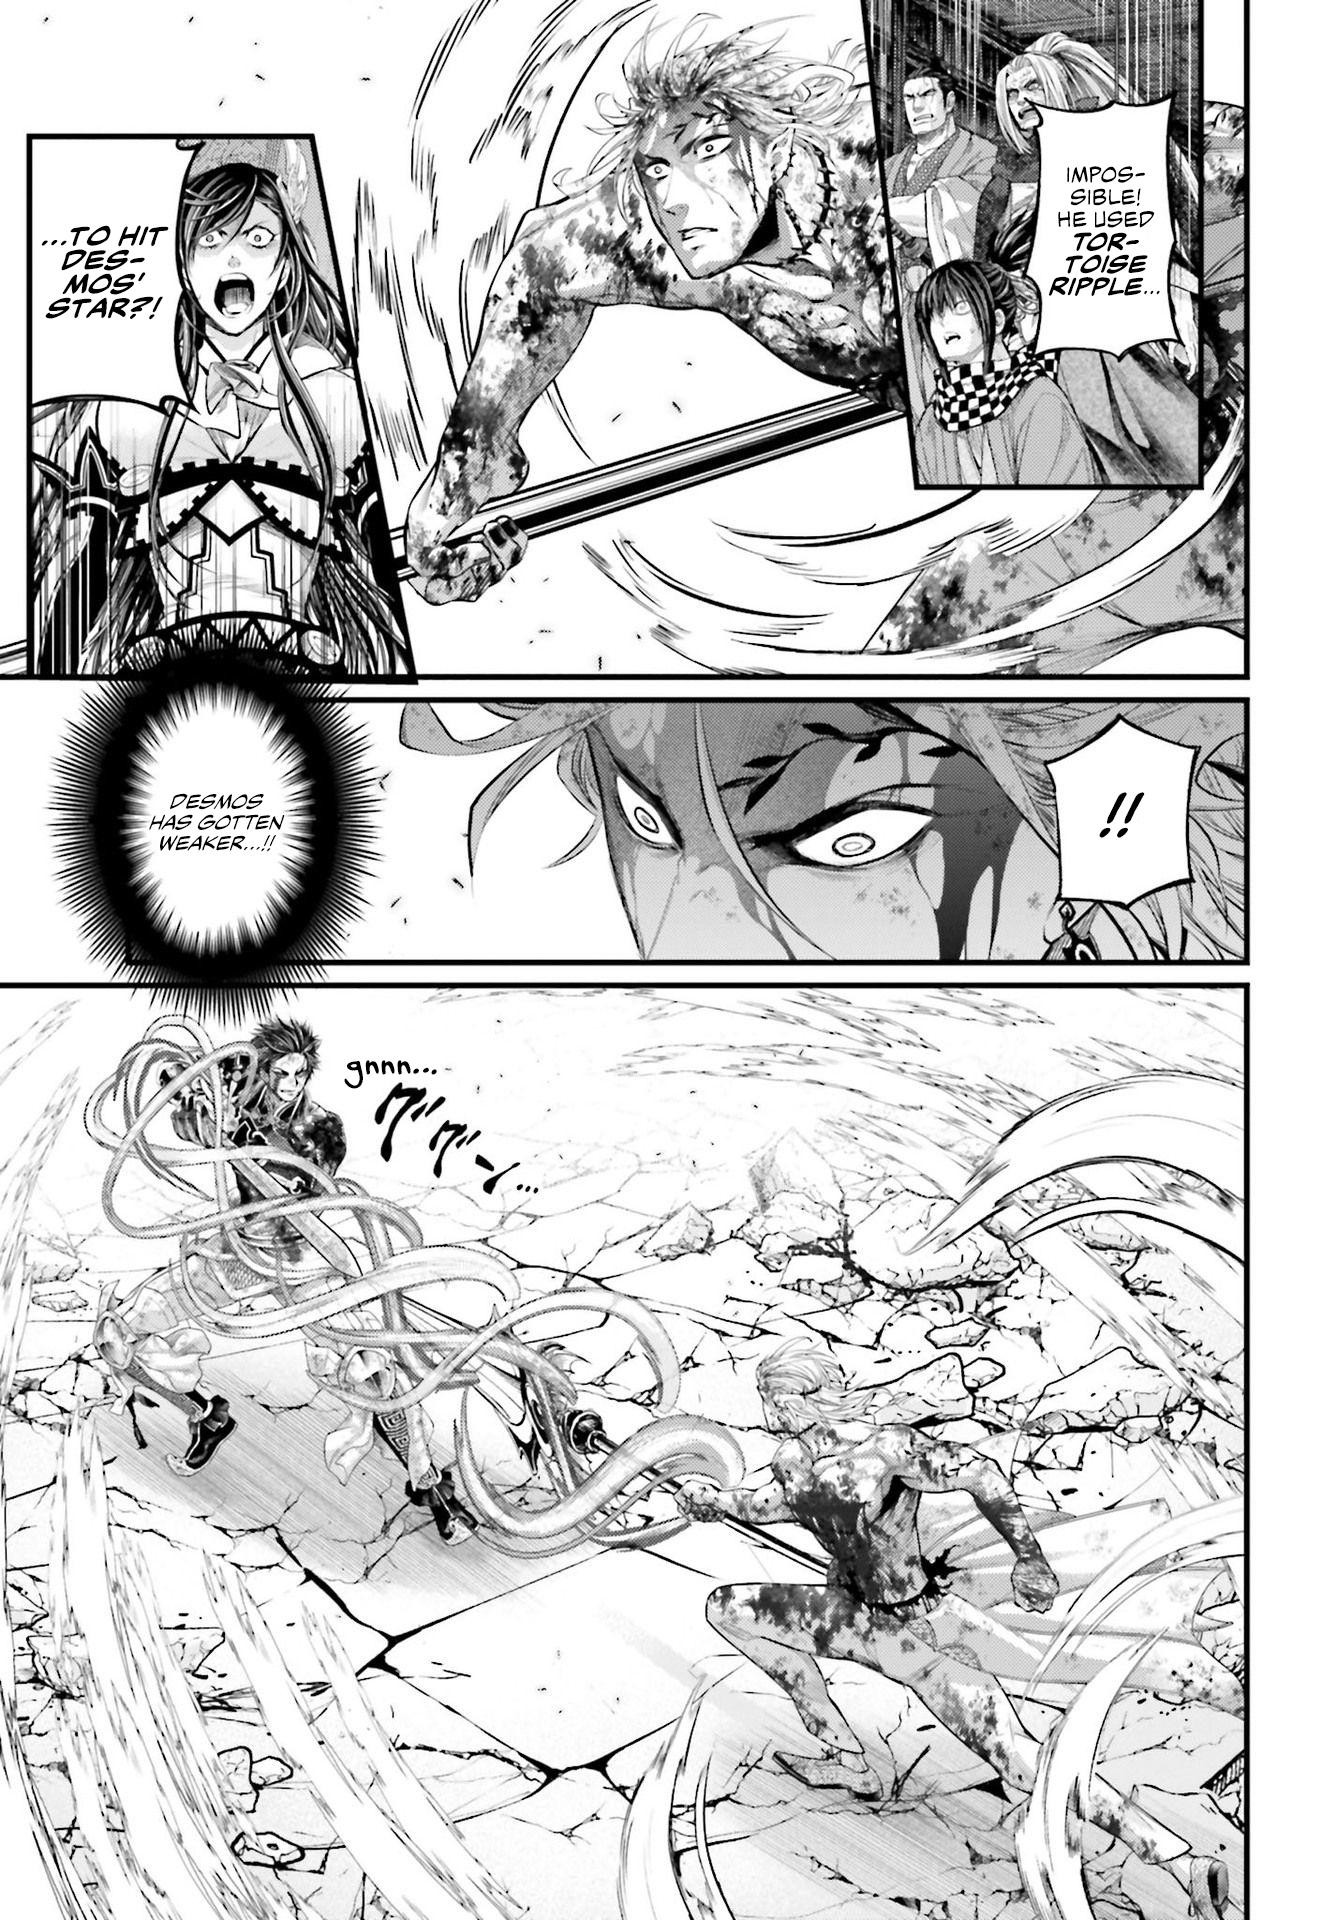 Shuumatsu no Valkyrie Ch.64 Page 8 - Mangago